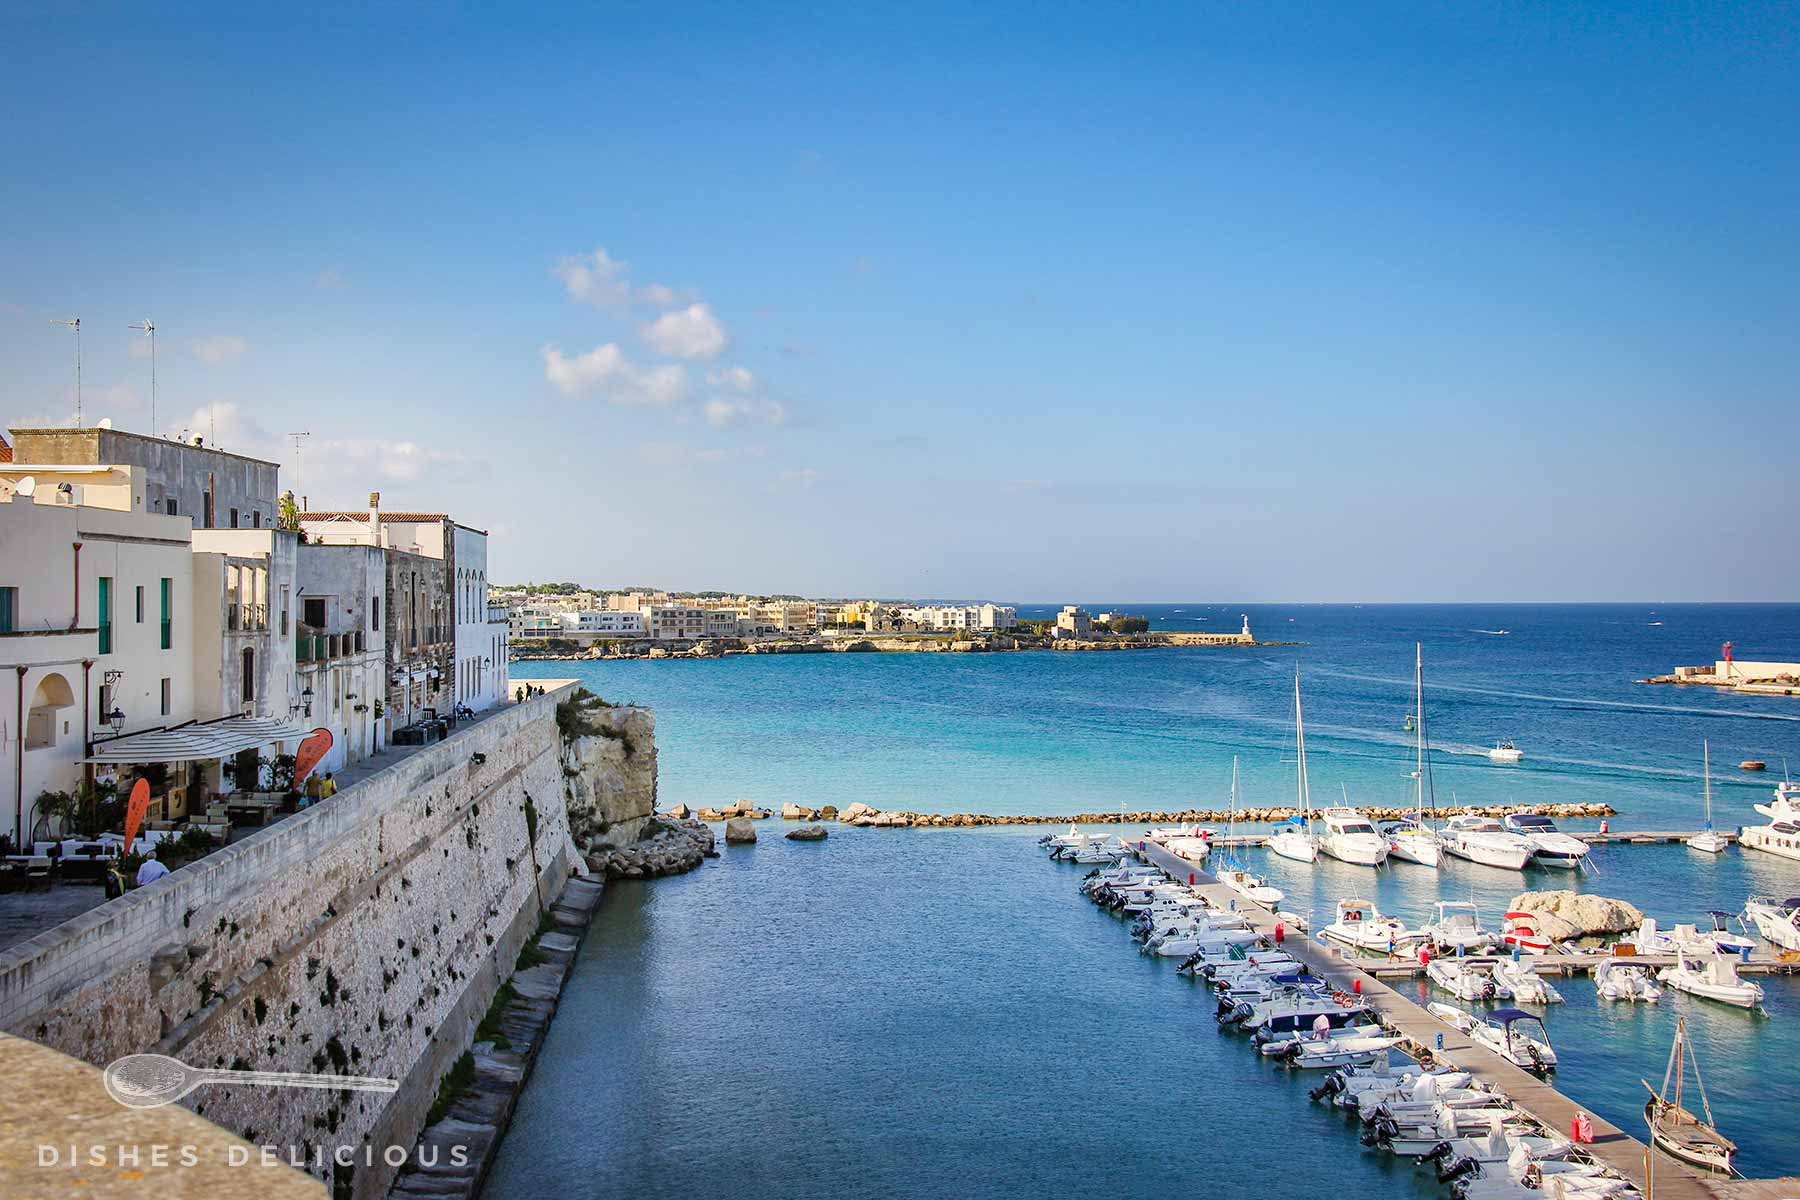 Die Bucht von Otranto: Altstadt und Yacht-Hafen.